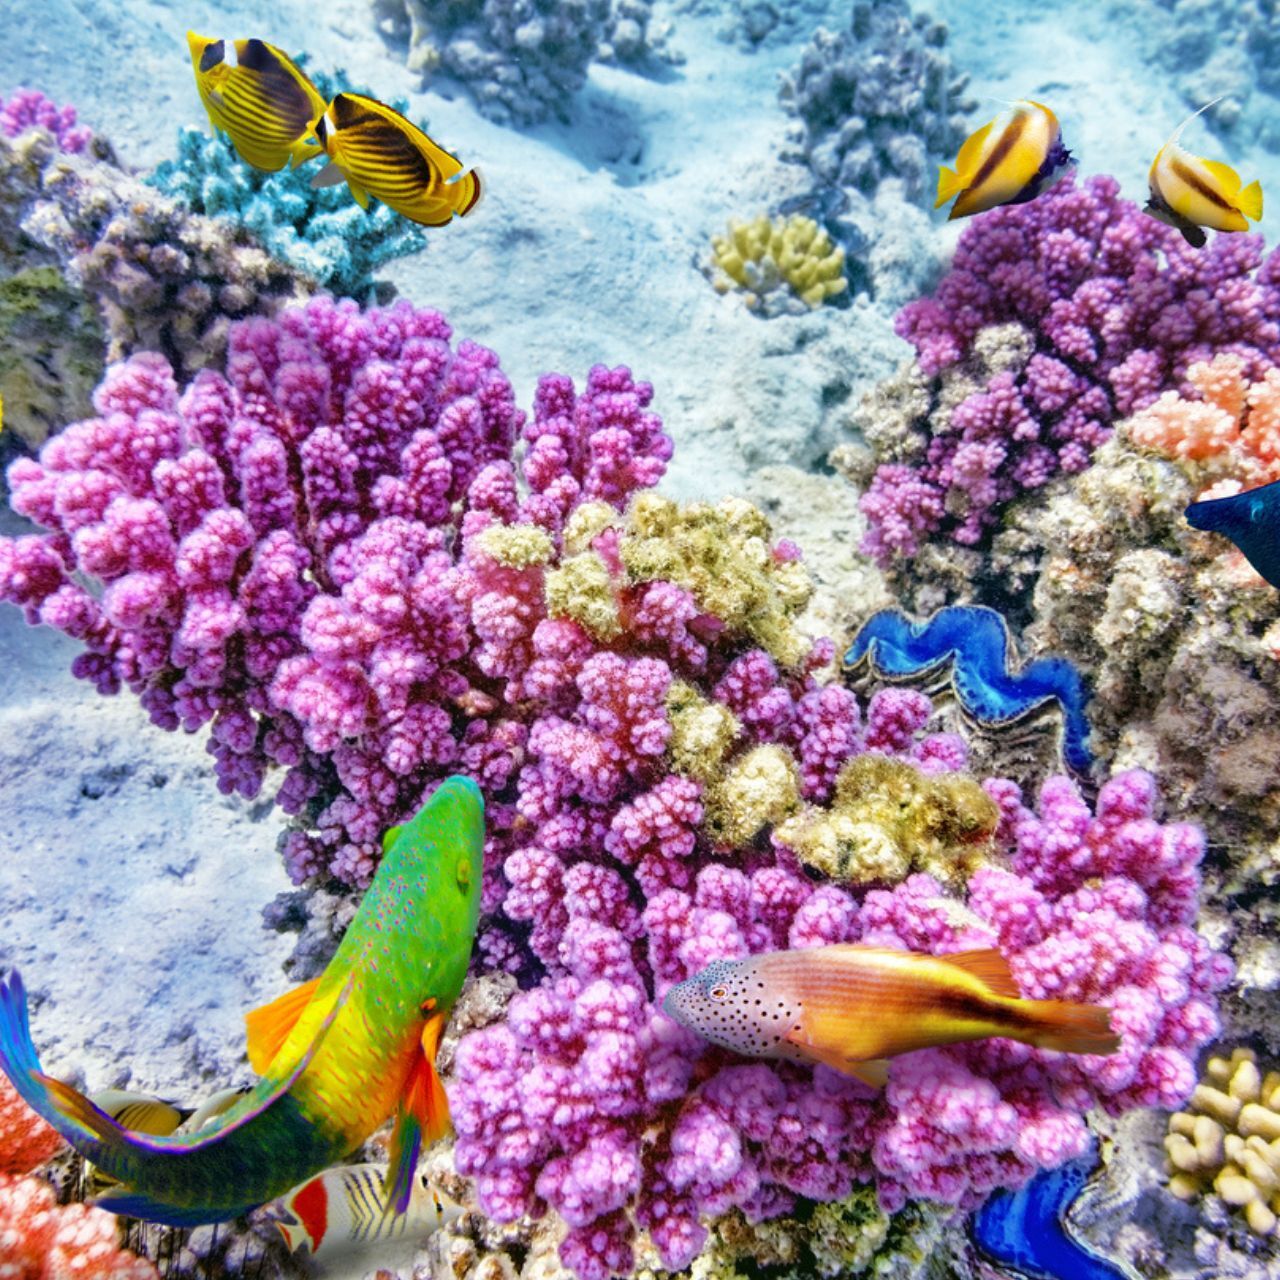 그레이트 배리어 리프: 화려한 산호